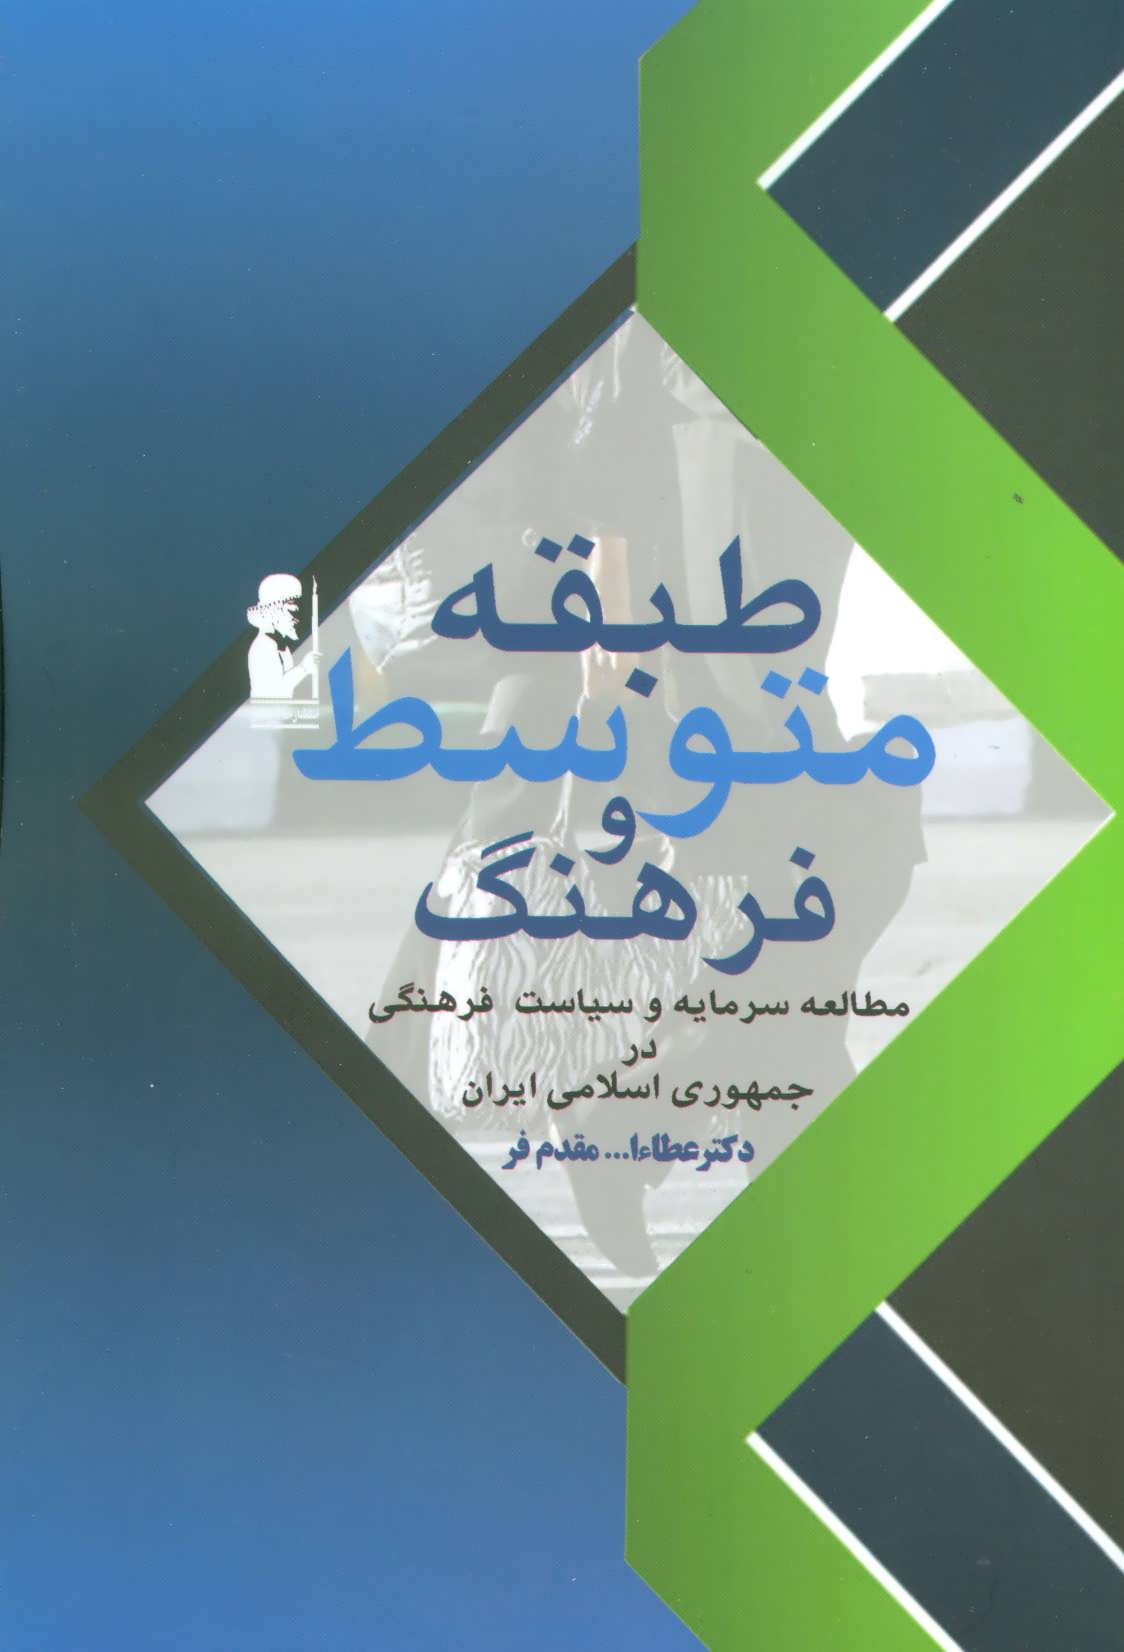 کتاب طبقه متوسط و فرهنگ (مطالعه سرمایه و سیاست فرهنگی در جمهوری اسلامی)